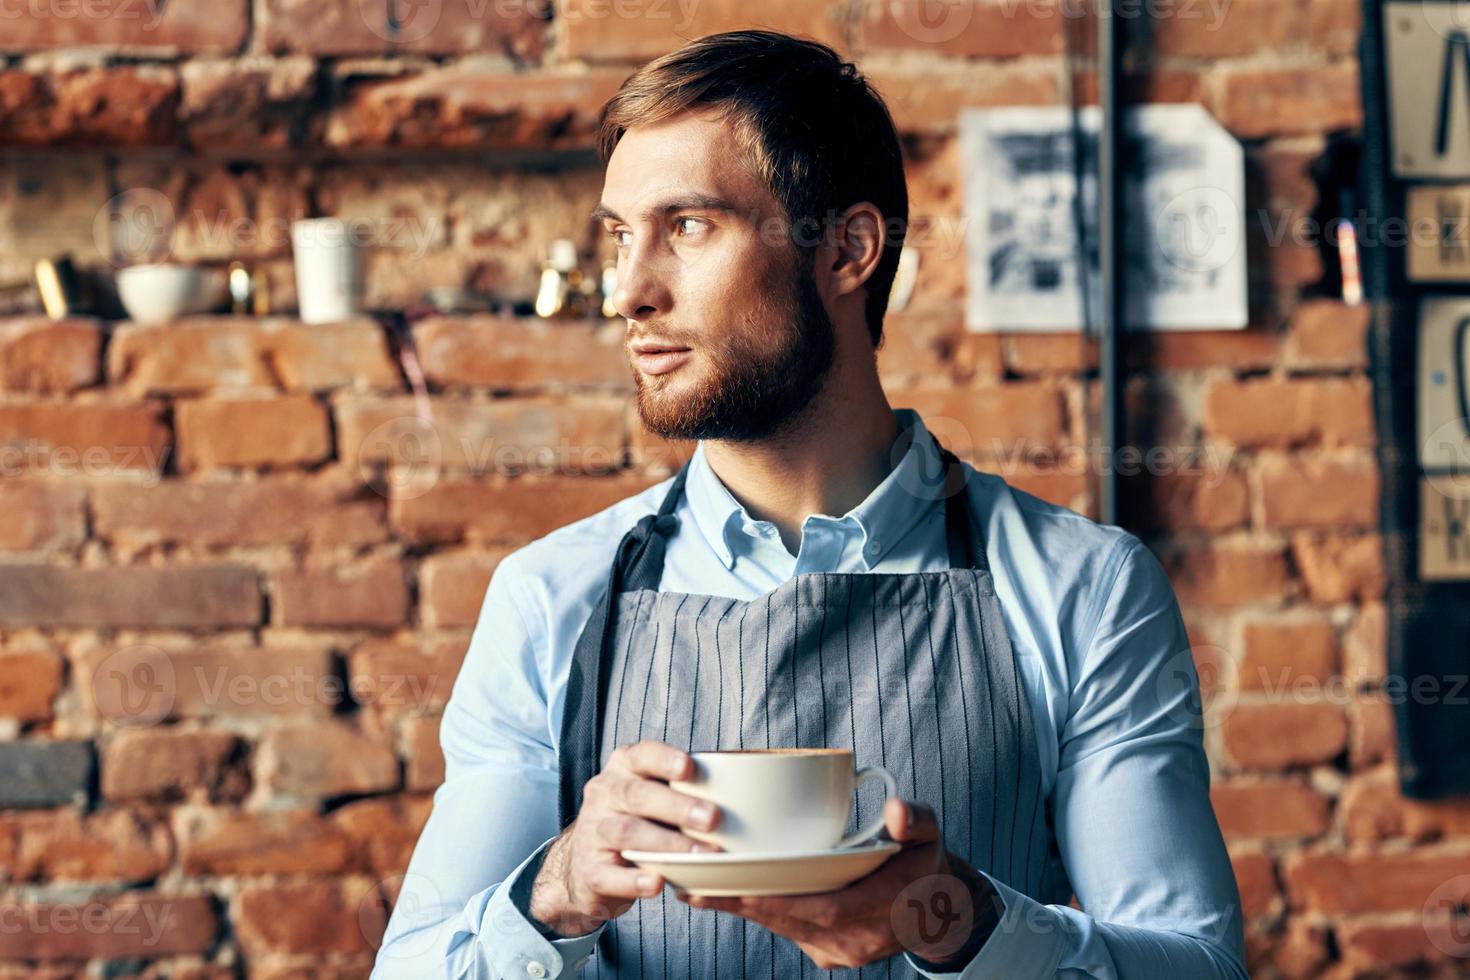 masculino garçom avental café copo profissional trabalhos estilo de vida foto